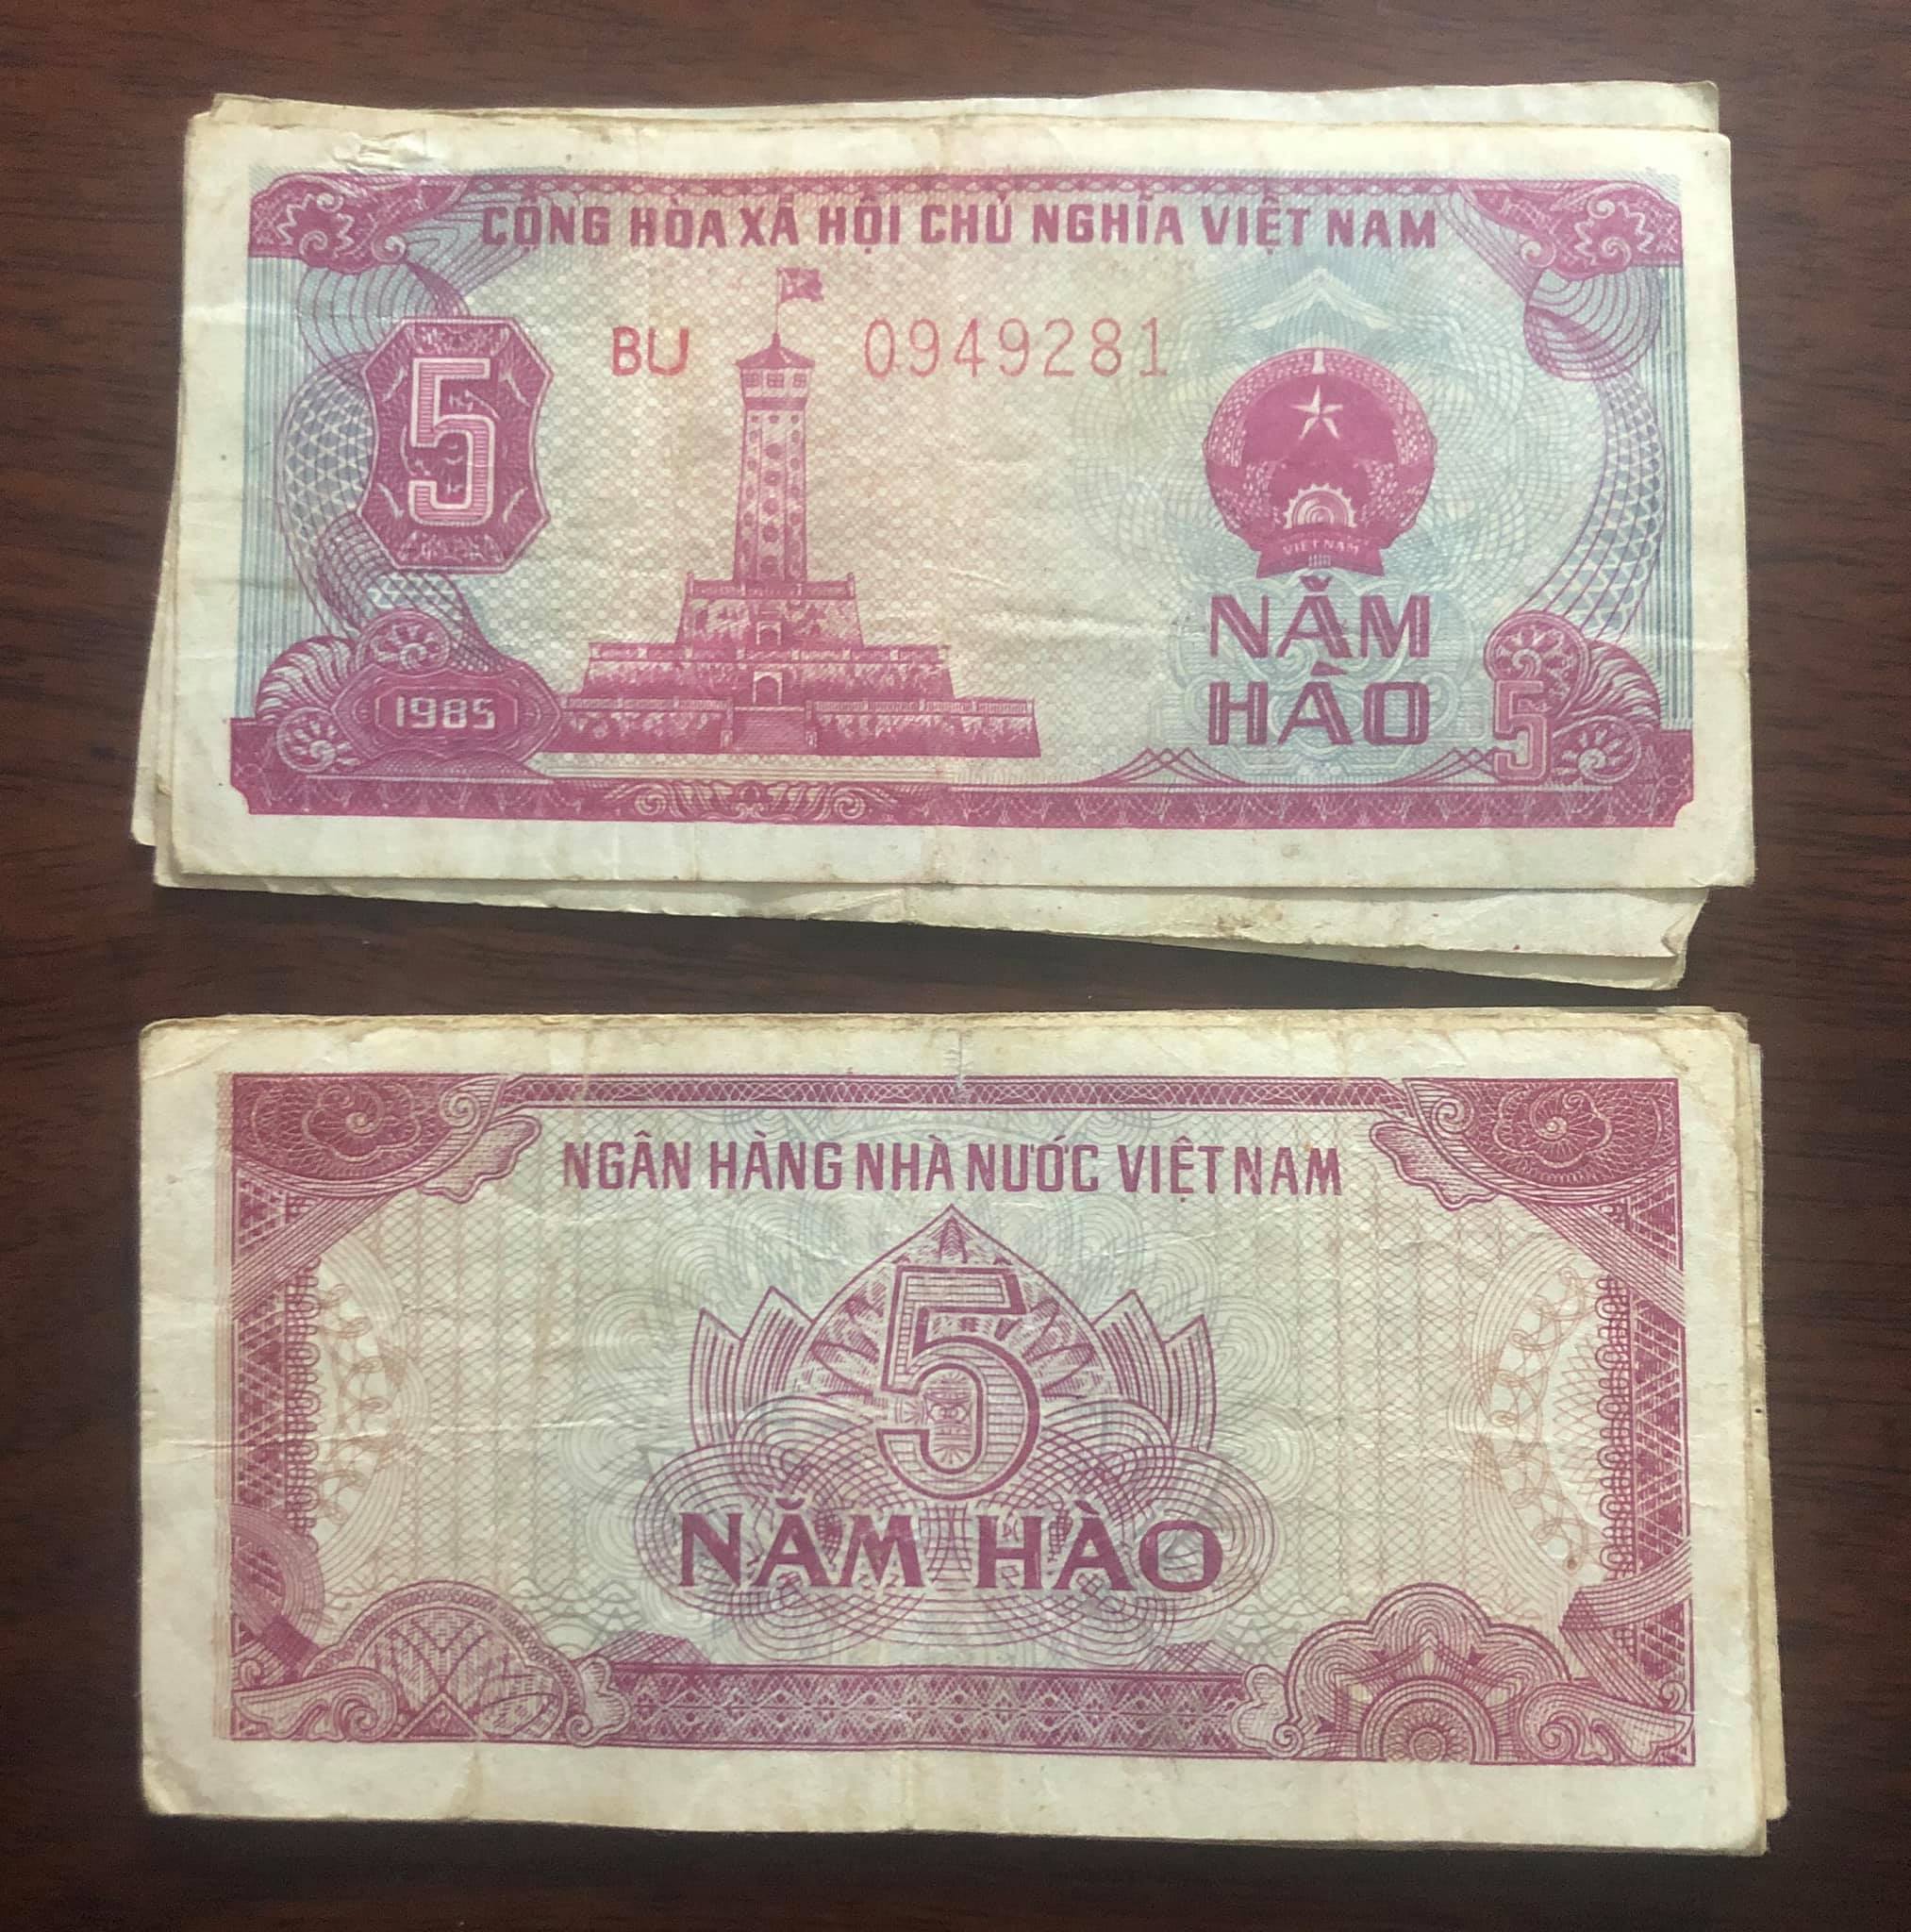 Tiền cổ Việt Nam 5 hào 1985, mệnh giá nhỏ nhất trong bộ bao cấp